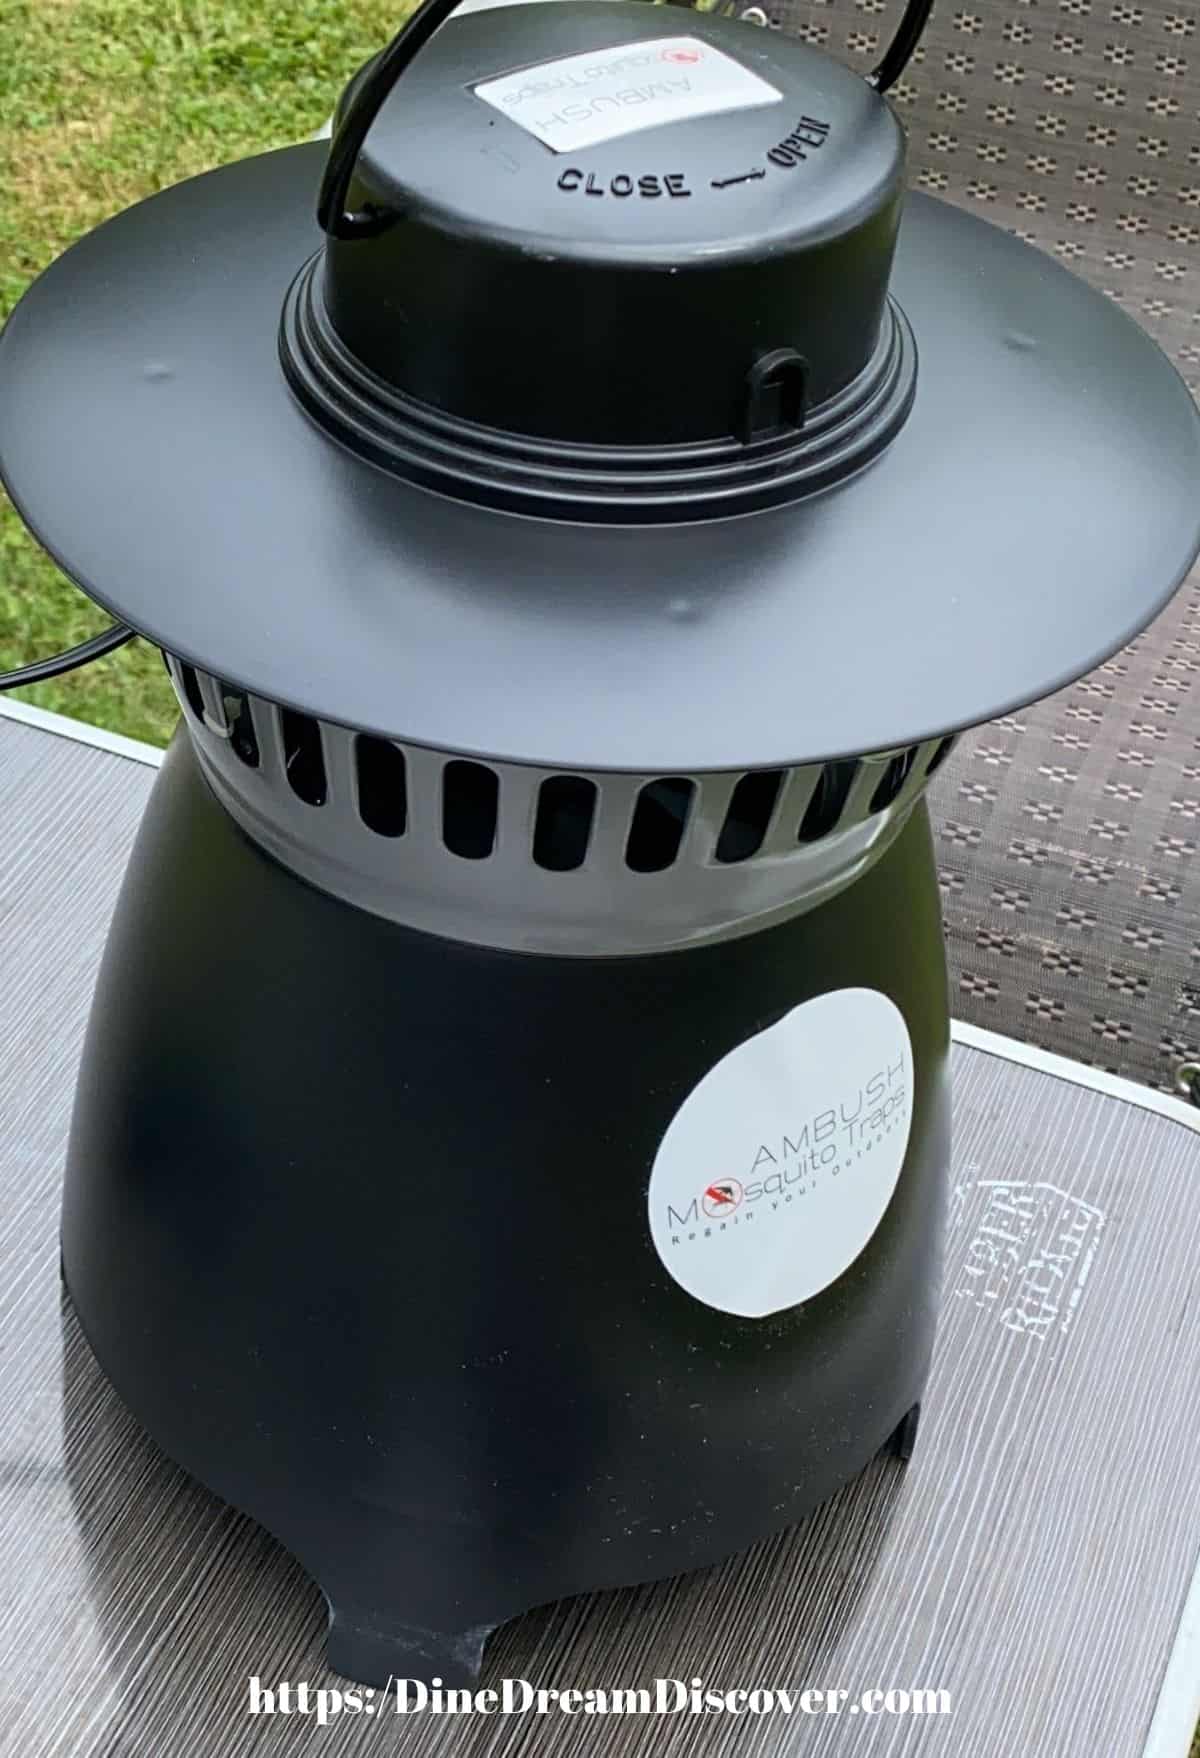 ambush mosquito trap